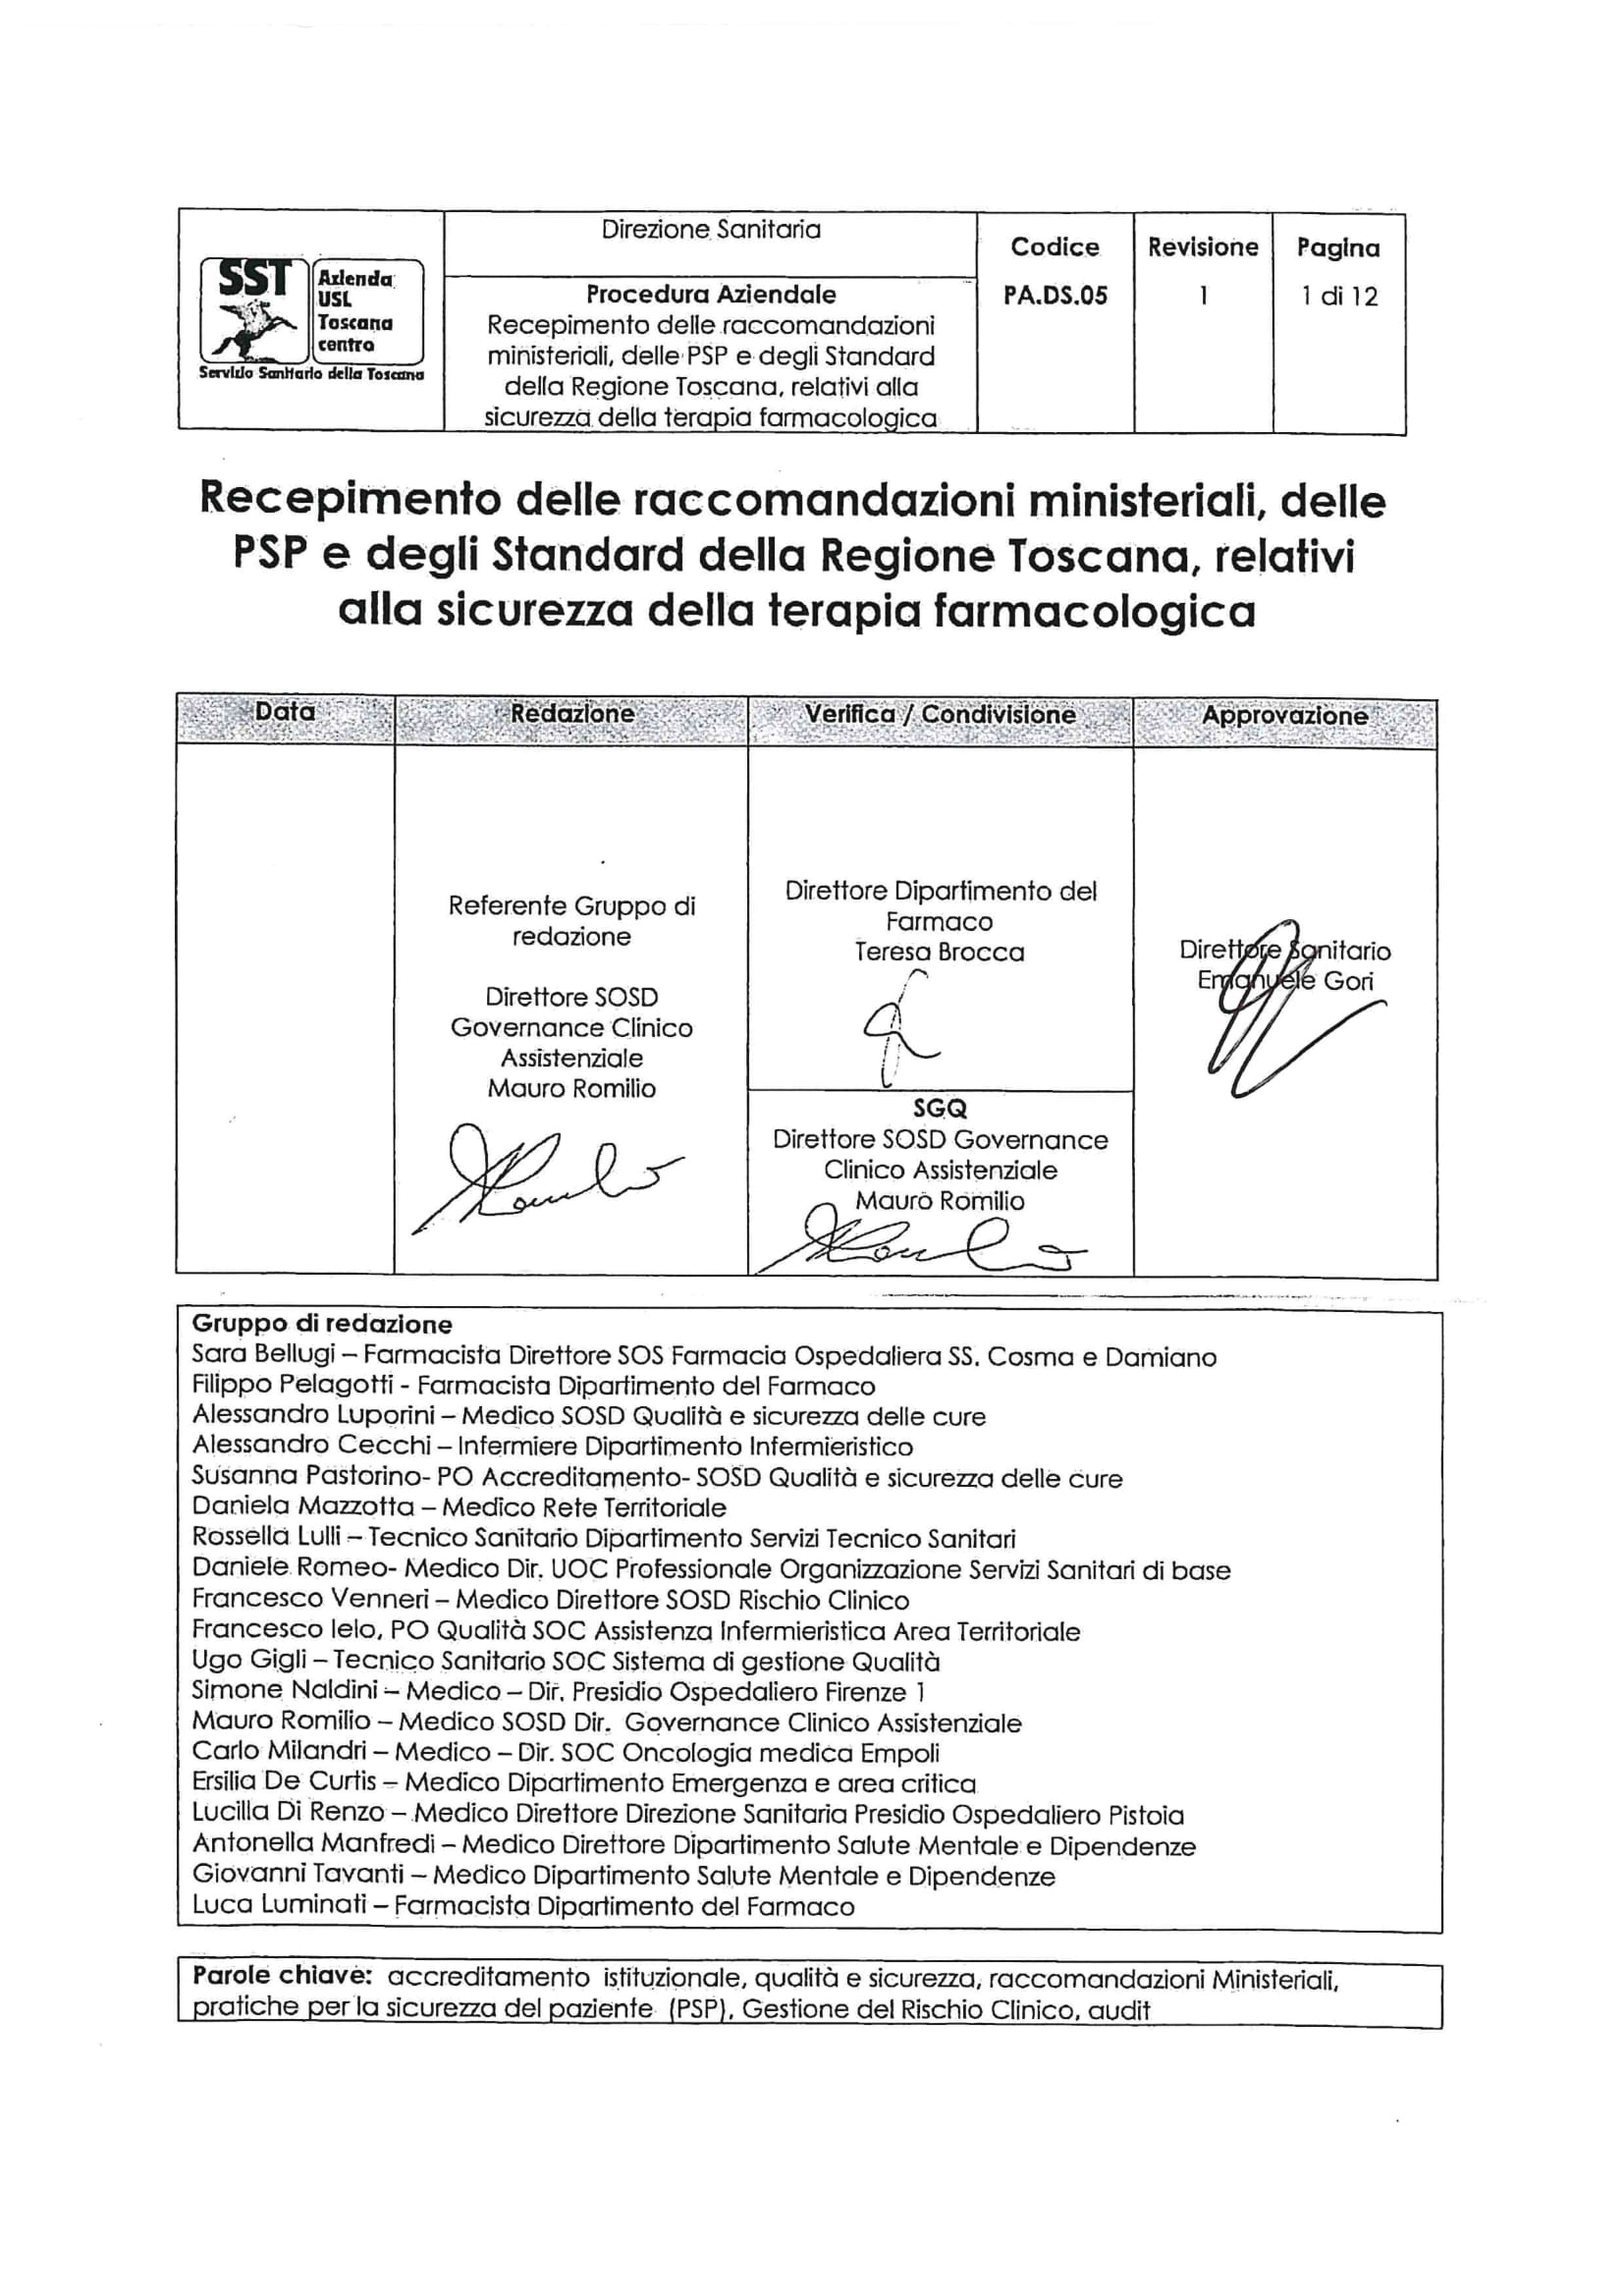 PA.DS.05 rev.1 Recepimento delle raccomandazioni ministeriali, delle PSP e degli Standard della Regione Toscana, relativi alla sicurezza della terapia farmacologica